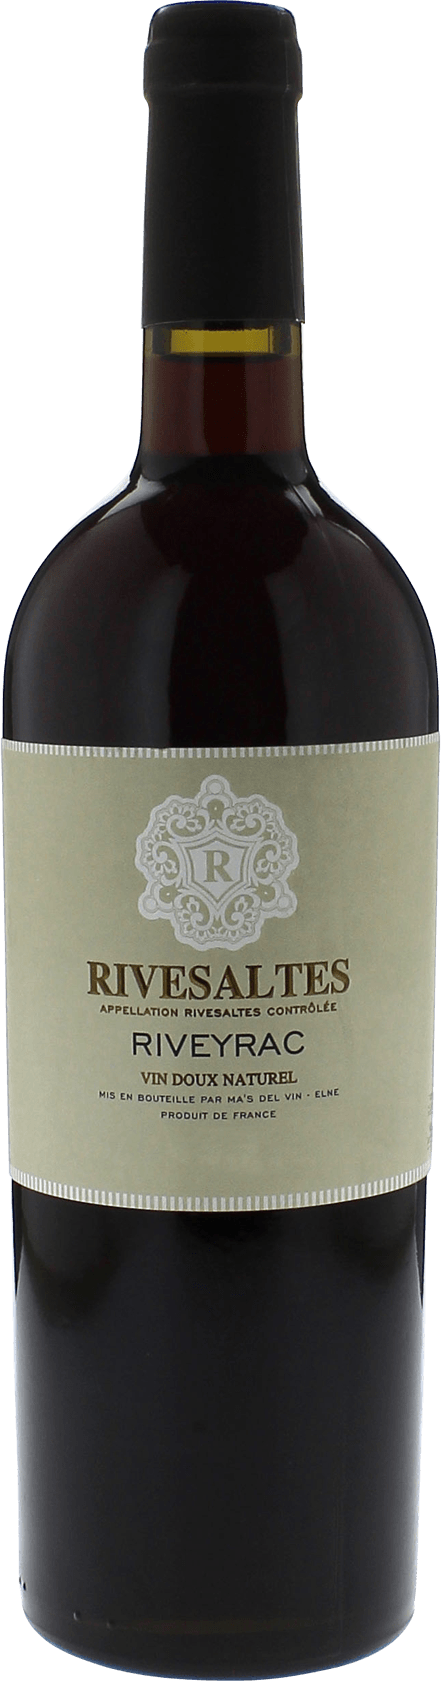 Rivesaltes riveyrac 1986 Vin doux naturel Rivesaltes, Vin doux naturel